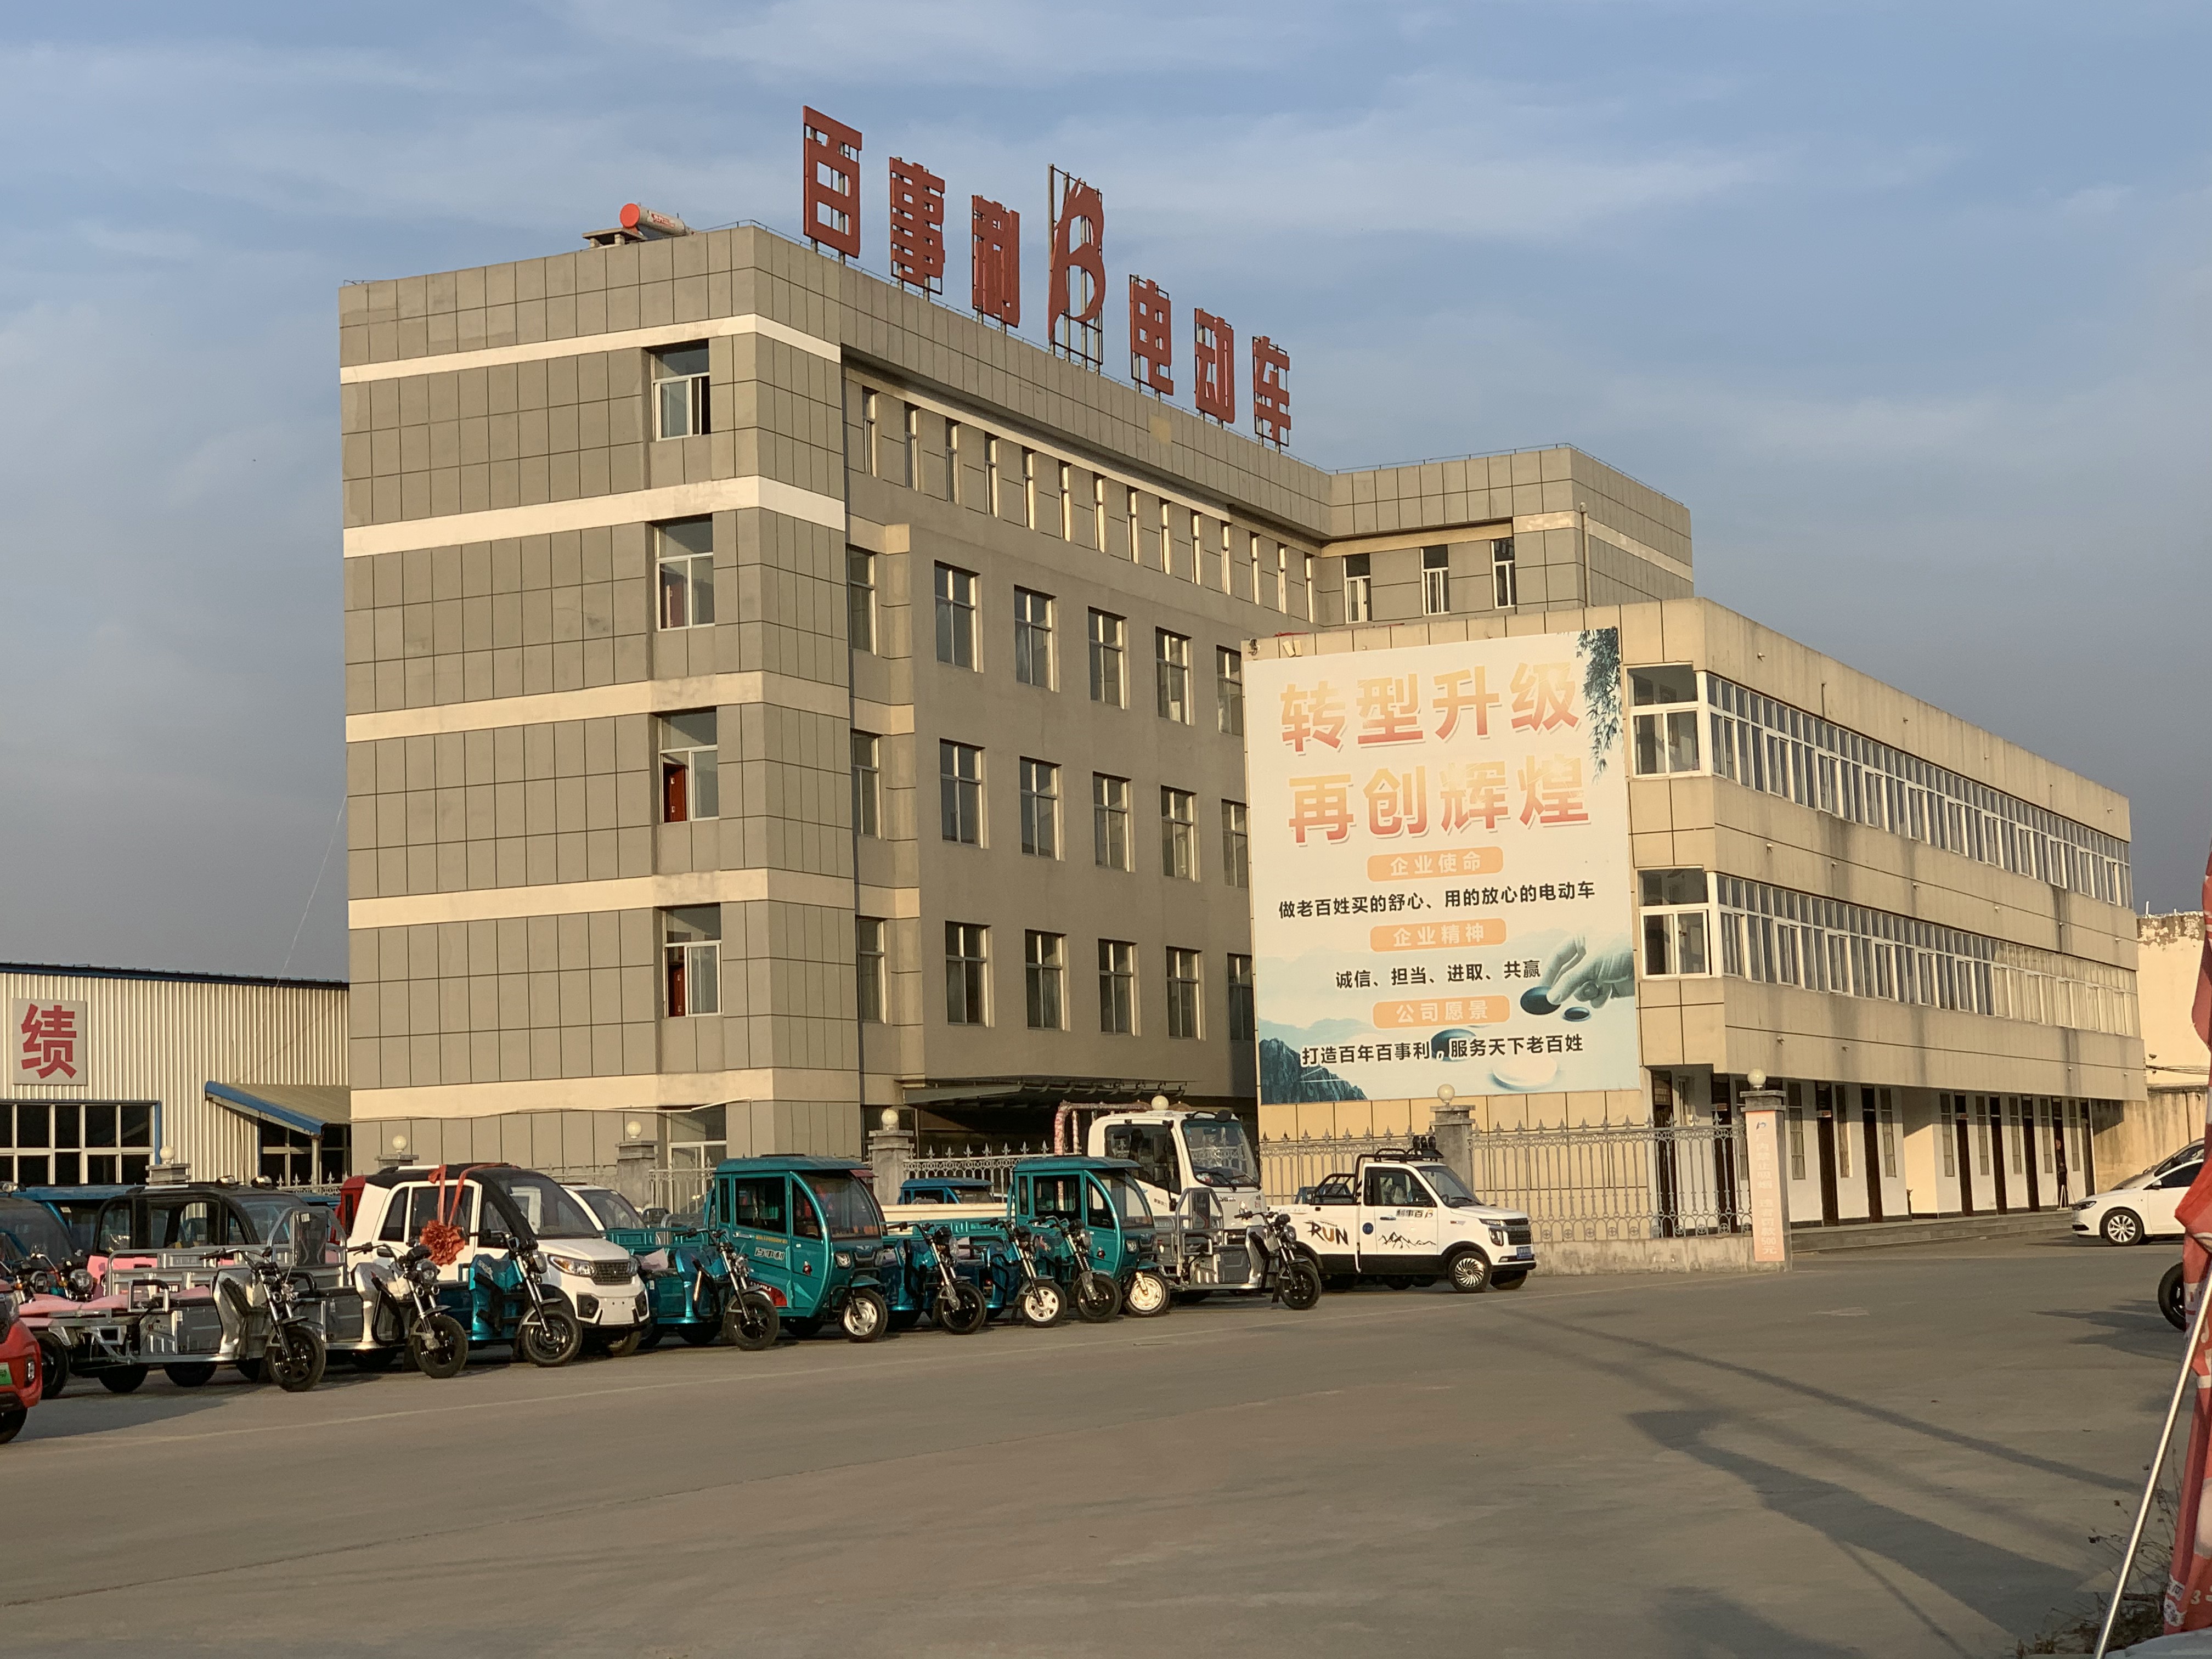 منطقة مصنع Furinkaevcar في الصين